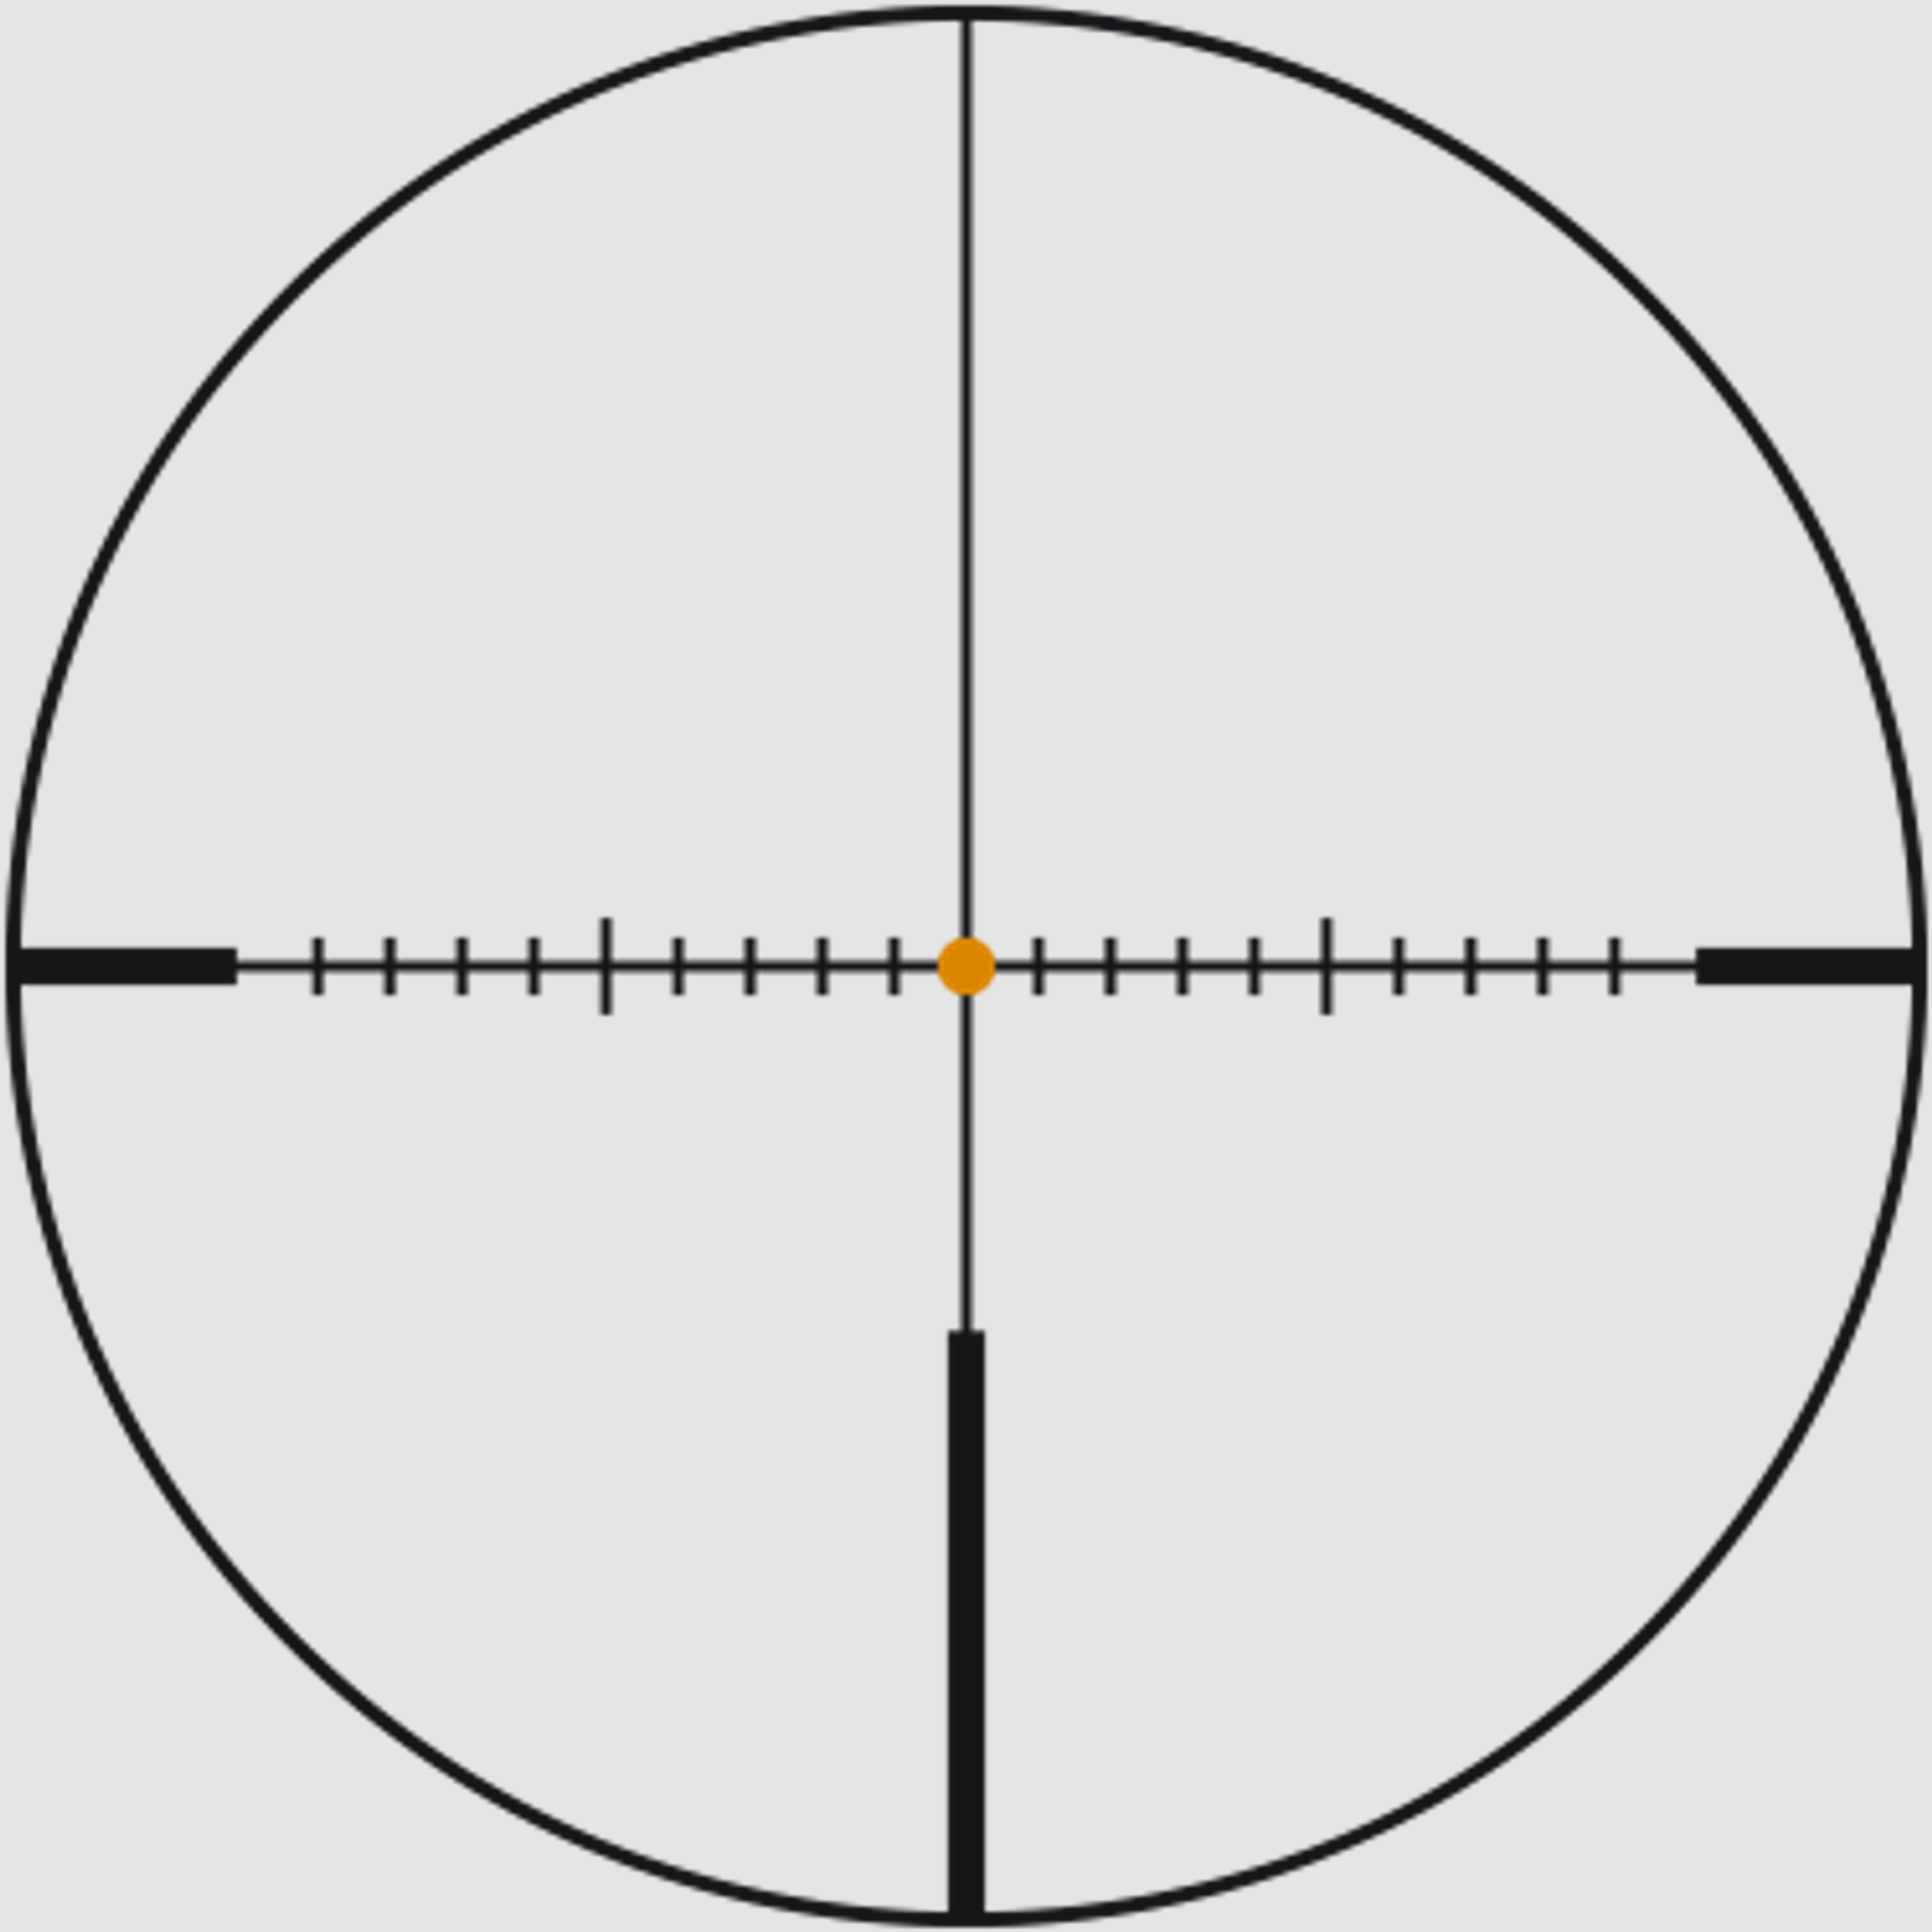 SWAROVSKI Zielfernrohr mit Leuchtabsehen 2,3-18x56 P Z8i L (30mm) Abs. 4A-I/4A-300I/BRX-I/4W-I